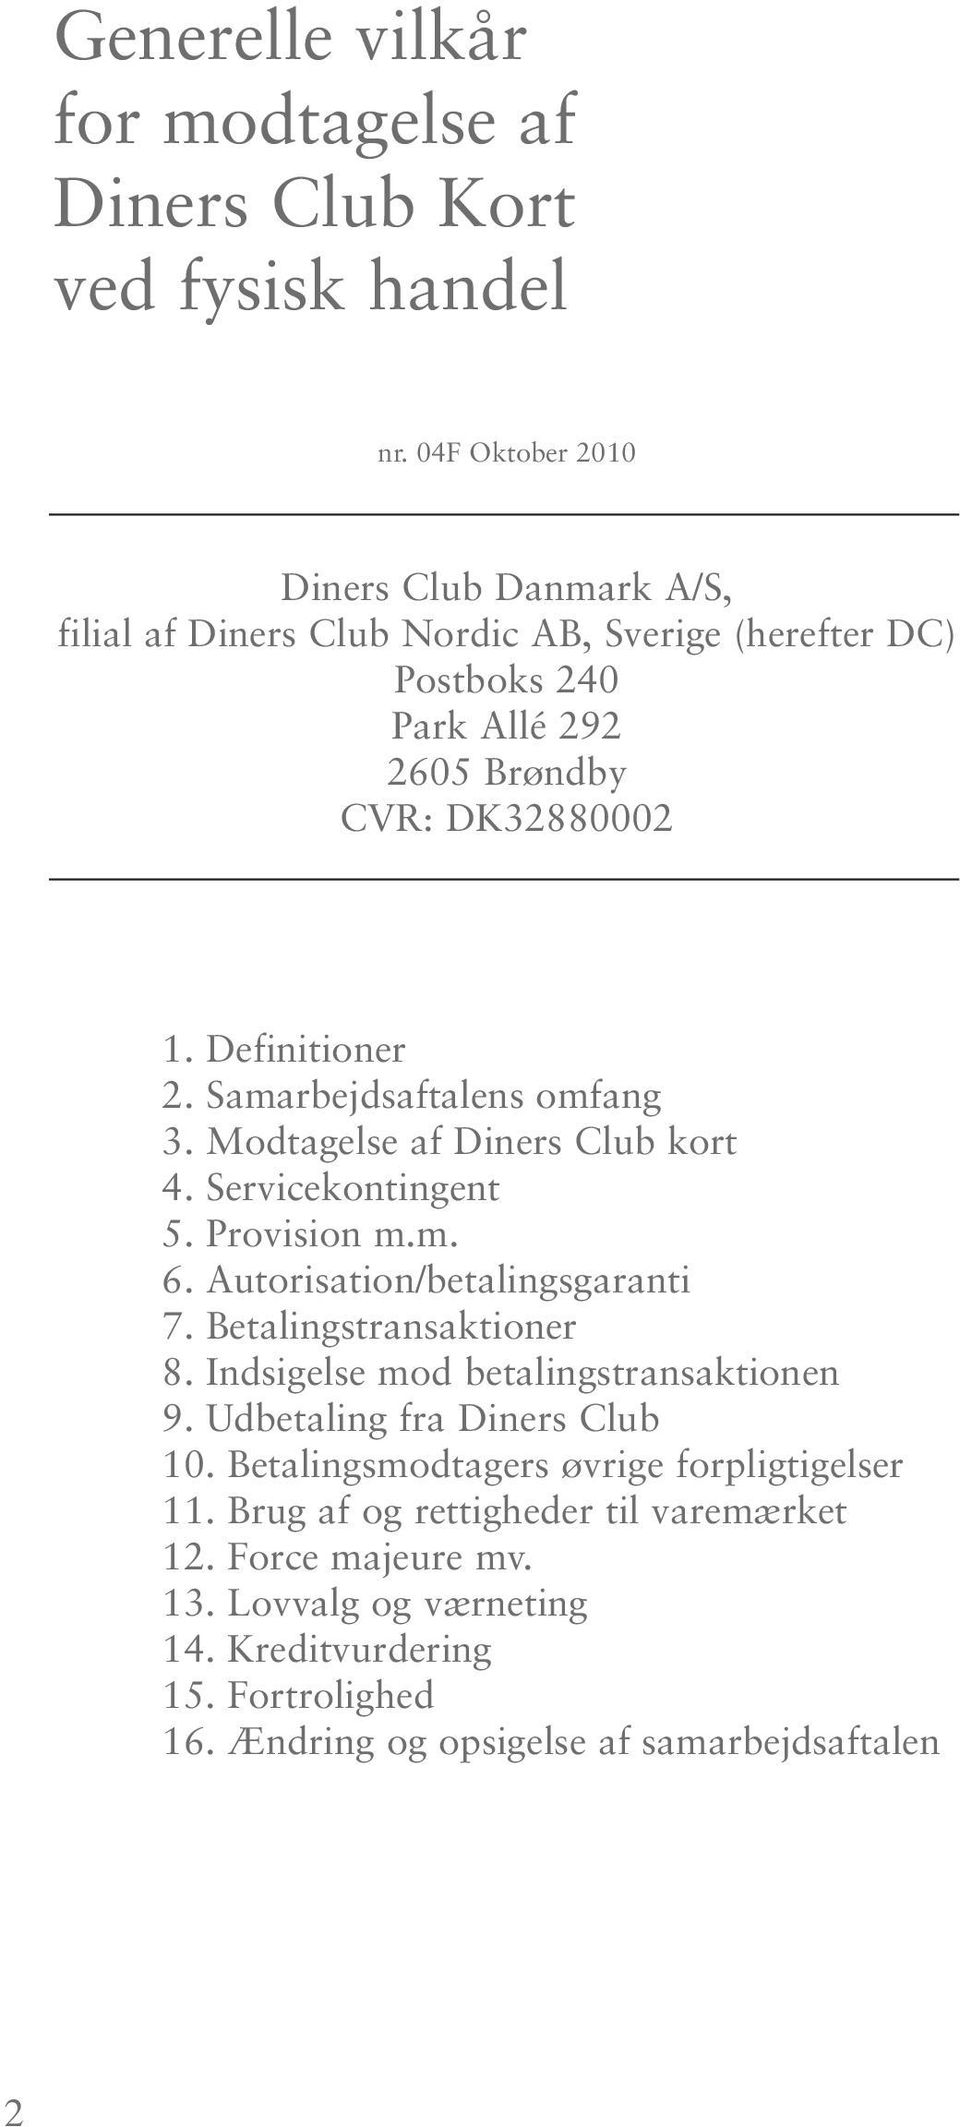 Samarbejdsaftalens omfang 3. Modtagelse af Diners Club kort 4. Servicekontingent 5. Provision m.m. 6. Autorisation/betalingsgaranti 7. Betalingstransaktioner 8.